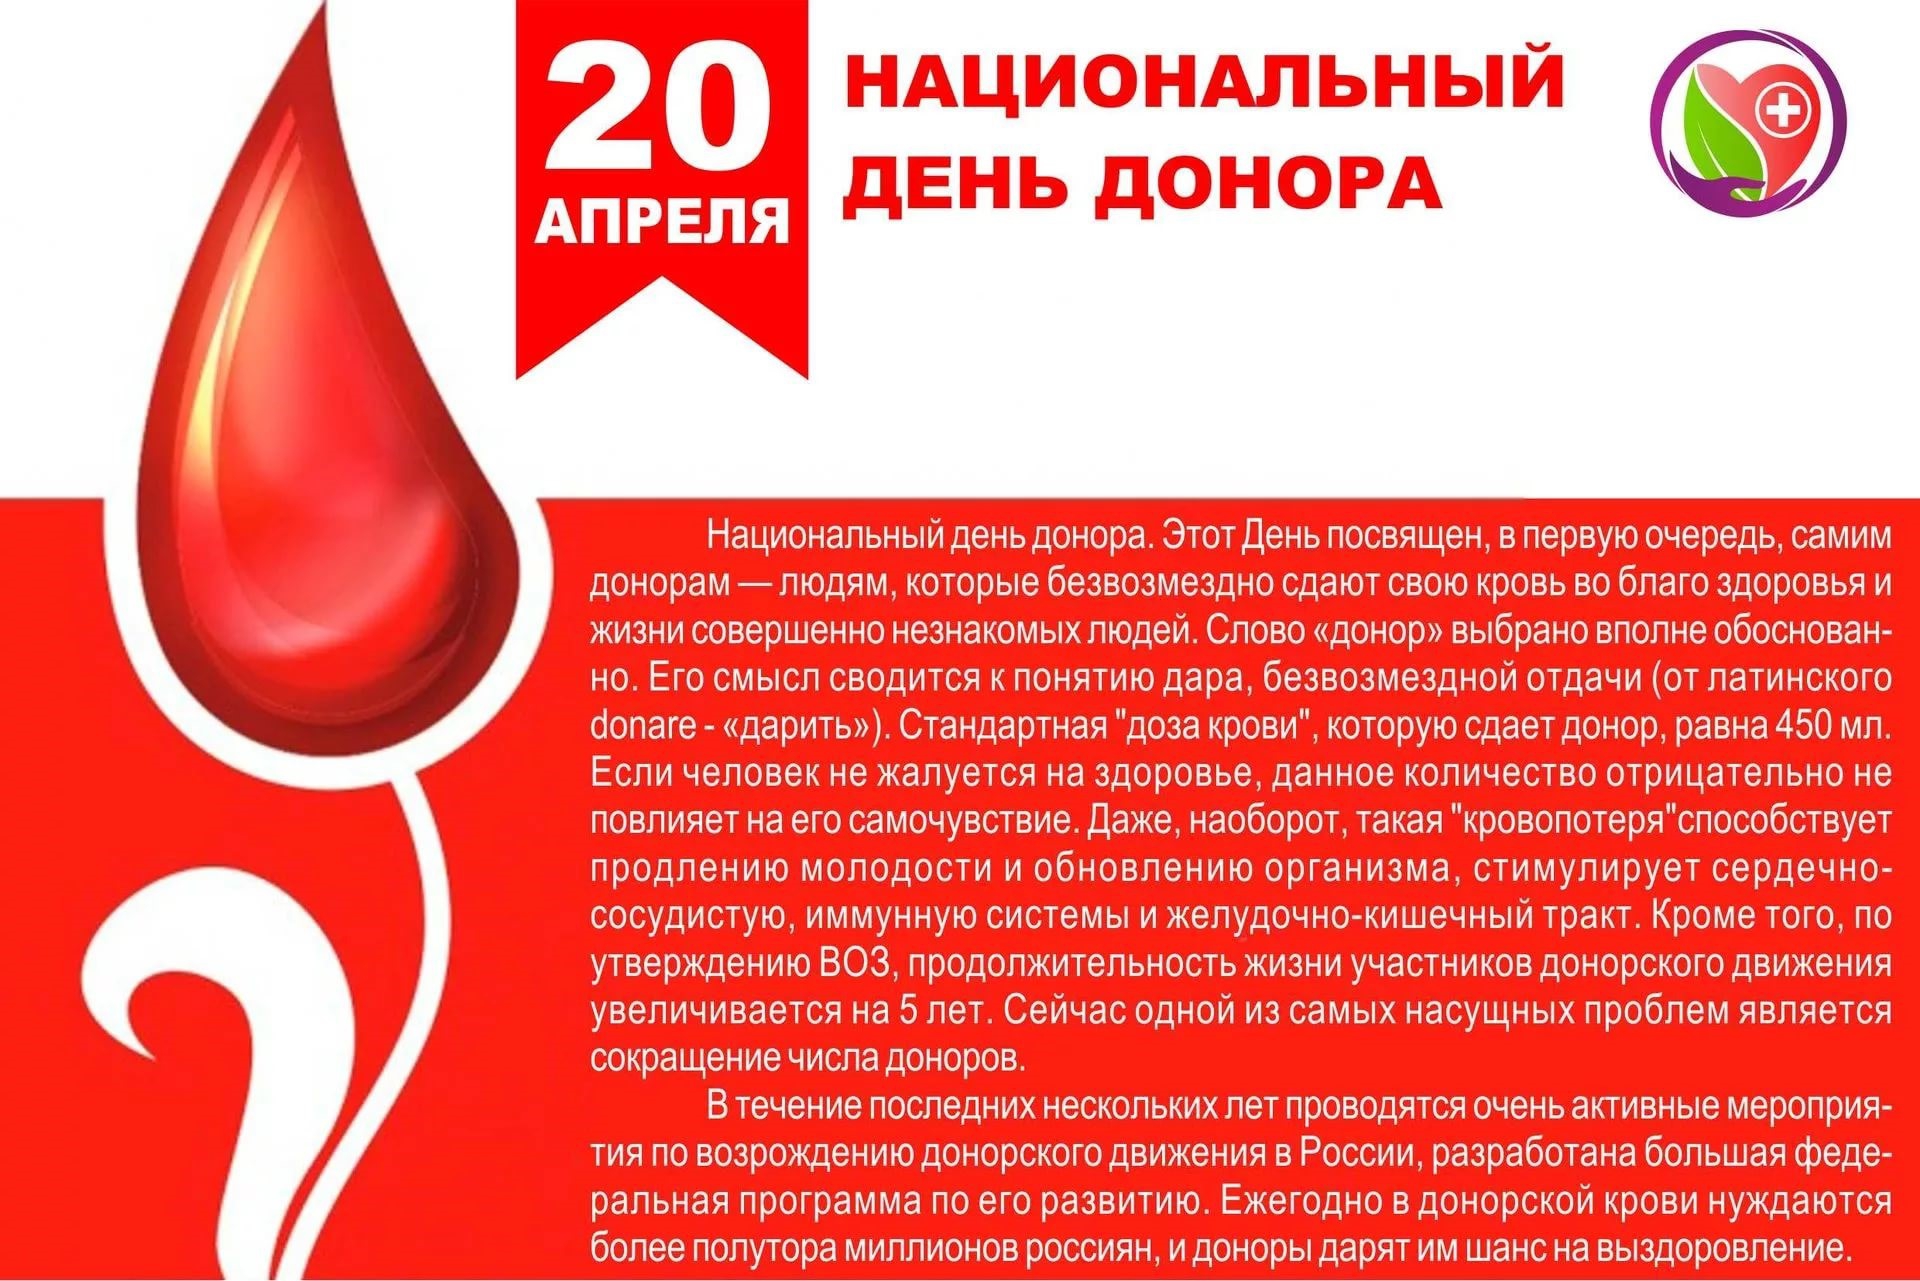 Донорство крови отзывы. День донора. Национальный день донора. С днем донора поздравление. 20 Апреля национальный день донора в России.